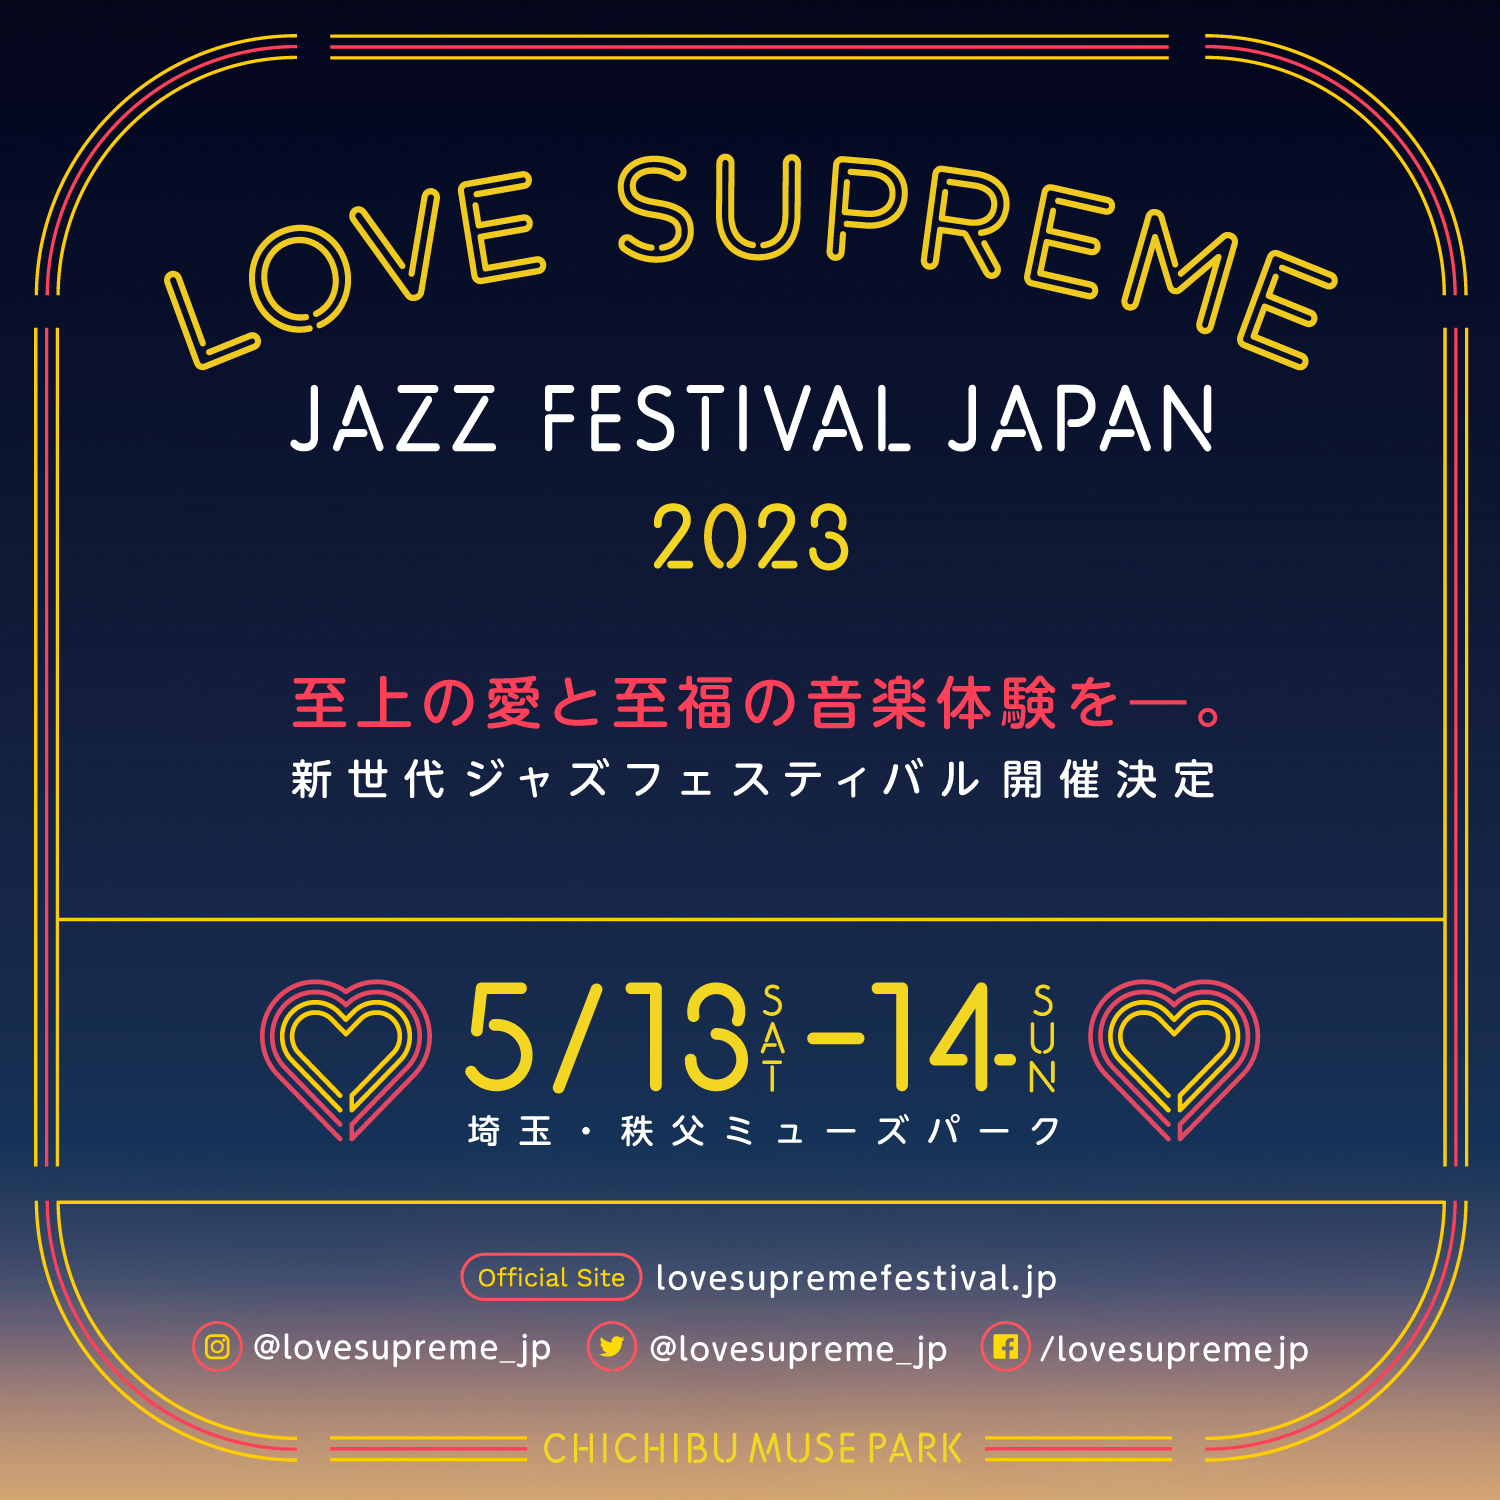 新世代ジャズフェスティバル『LOVE SUPREME JAZZ FESTIVAL JAPAN 2023』5月に開催決定 Musicman